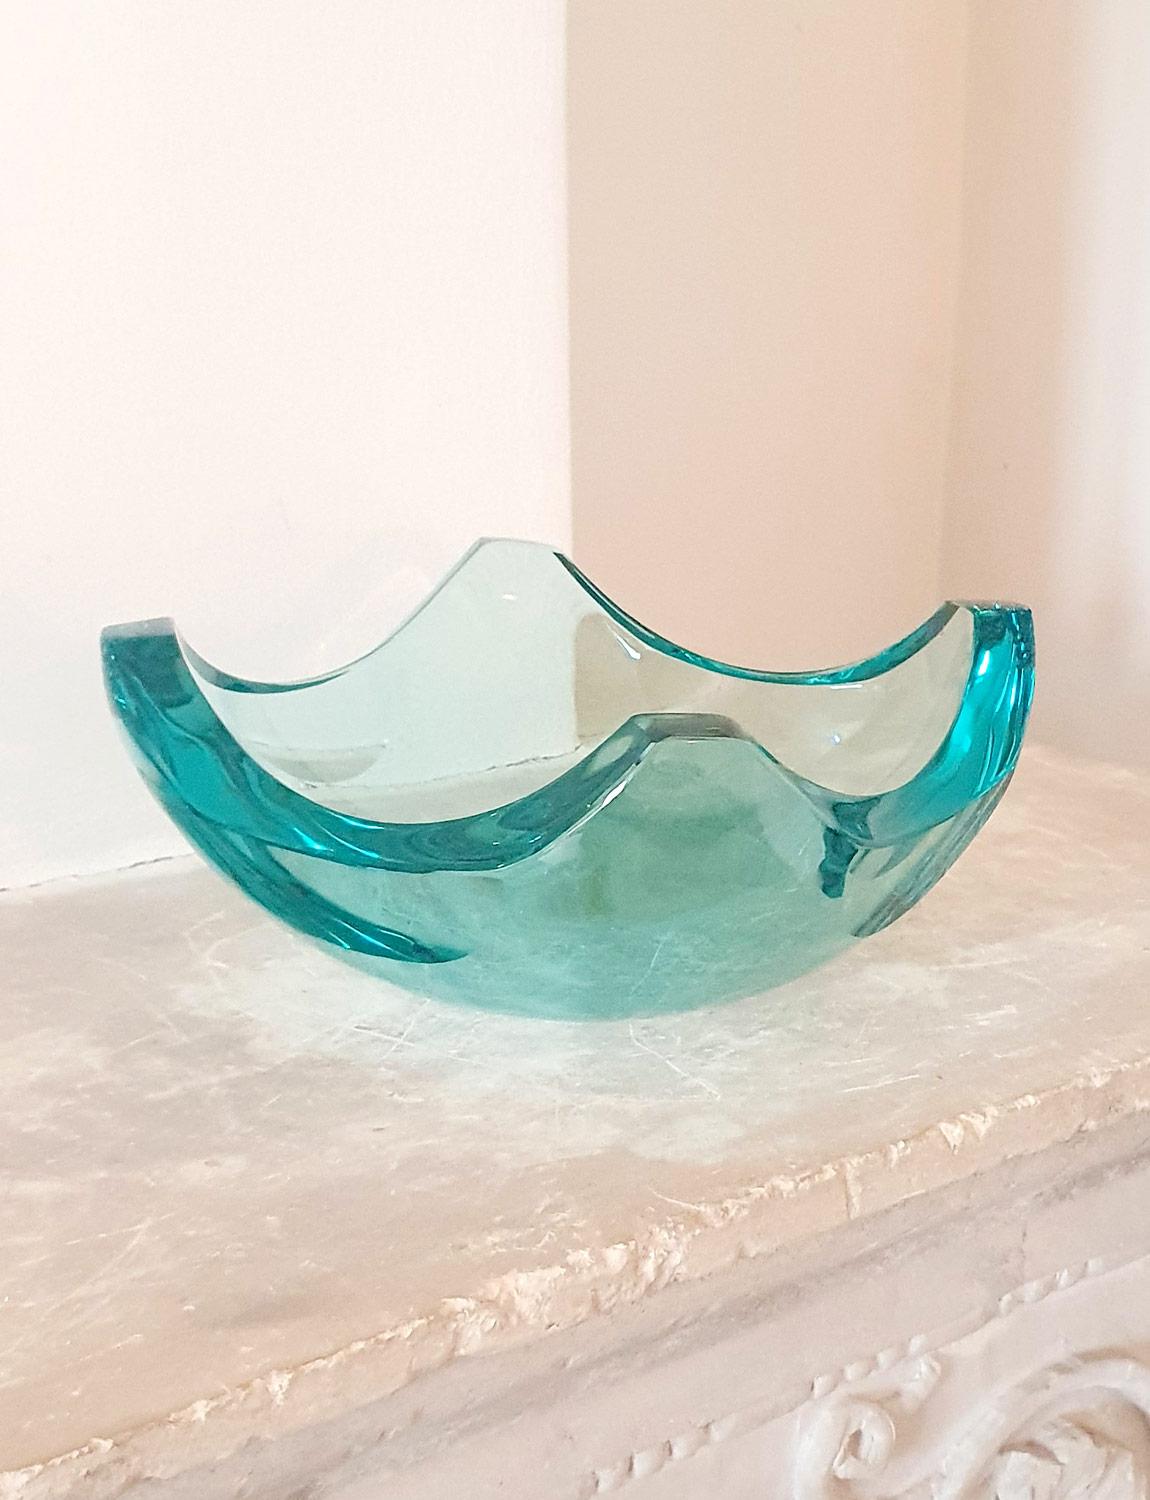 Un très bel exemple de grand centre de table de Fontana Arte. Cette magnifique coupe milanaise en verre lourd est d'une couleur turquoise éclatante. Il possède quatre coins repliés qui transforment ce qui était autrefois un grand morceau de verre